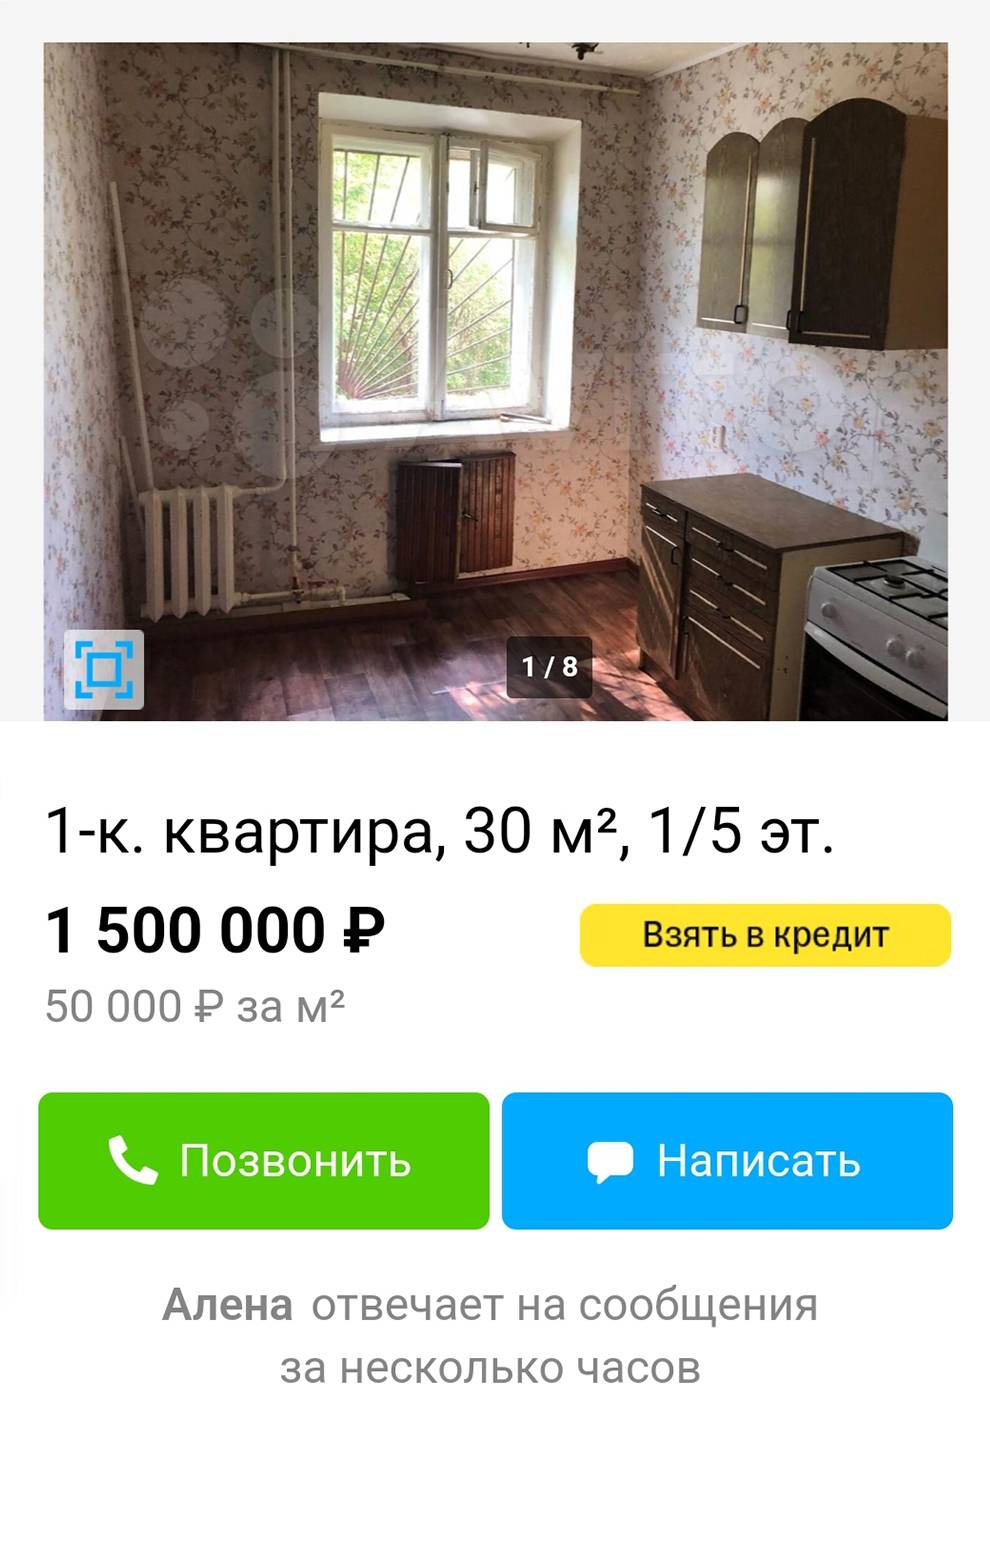 Однокомнатная квартира в центре города — 1,5&nbsp;млн. Источник: avito.ru